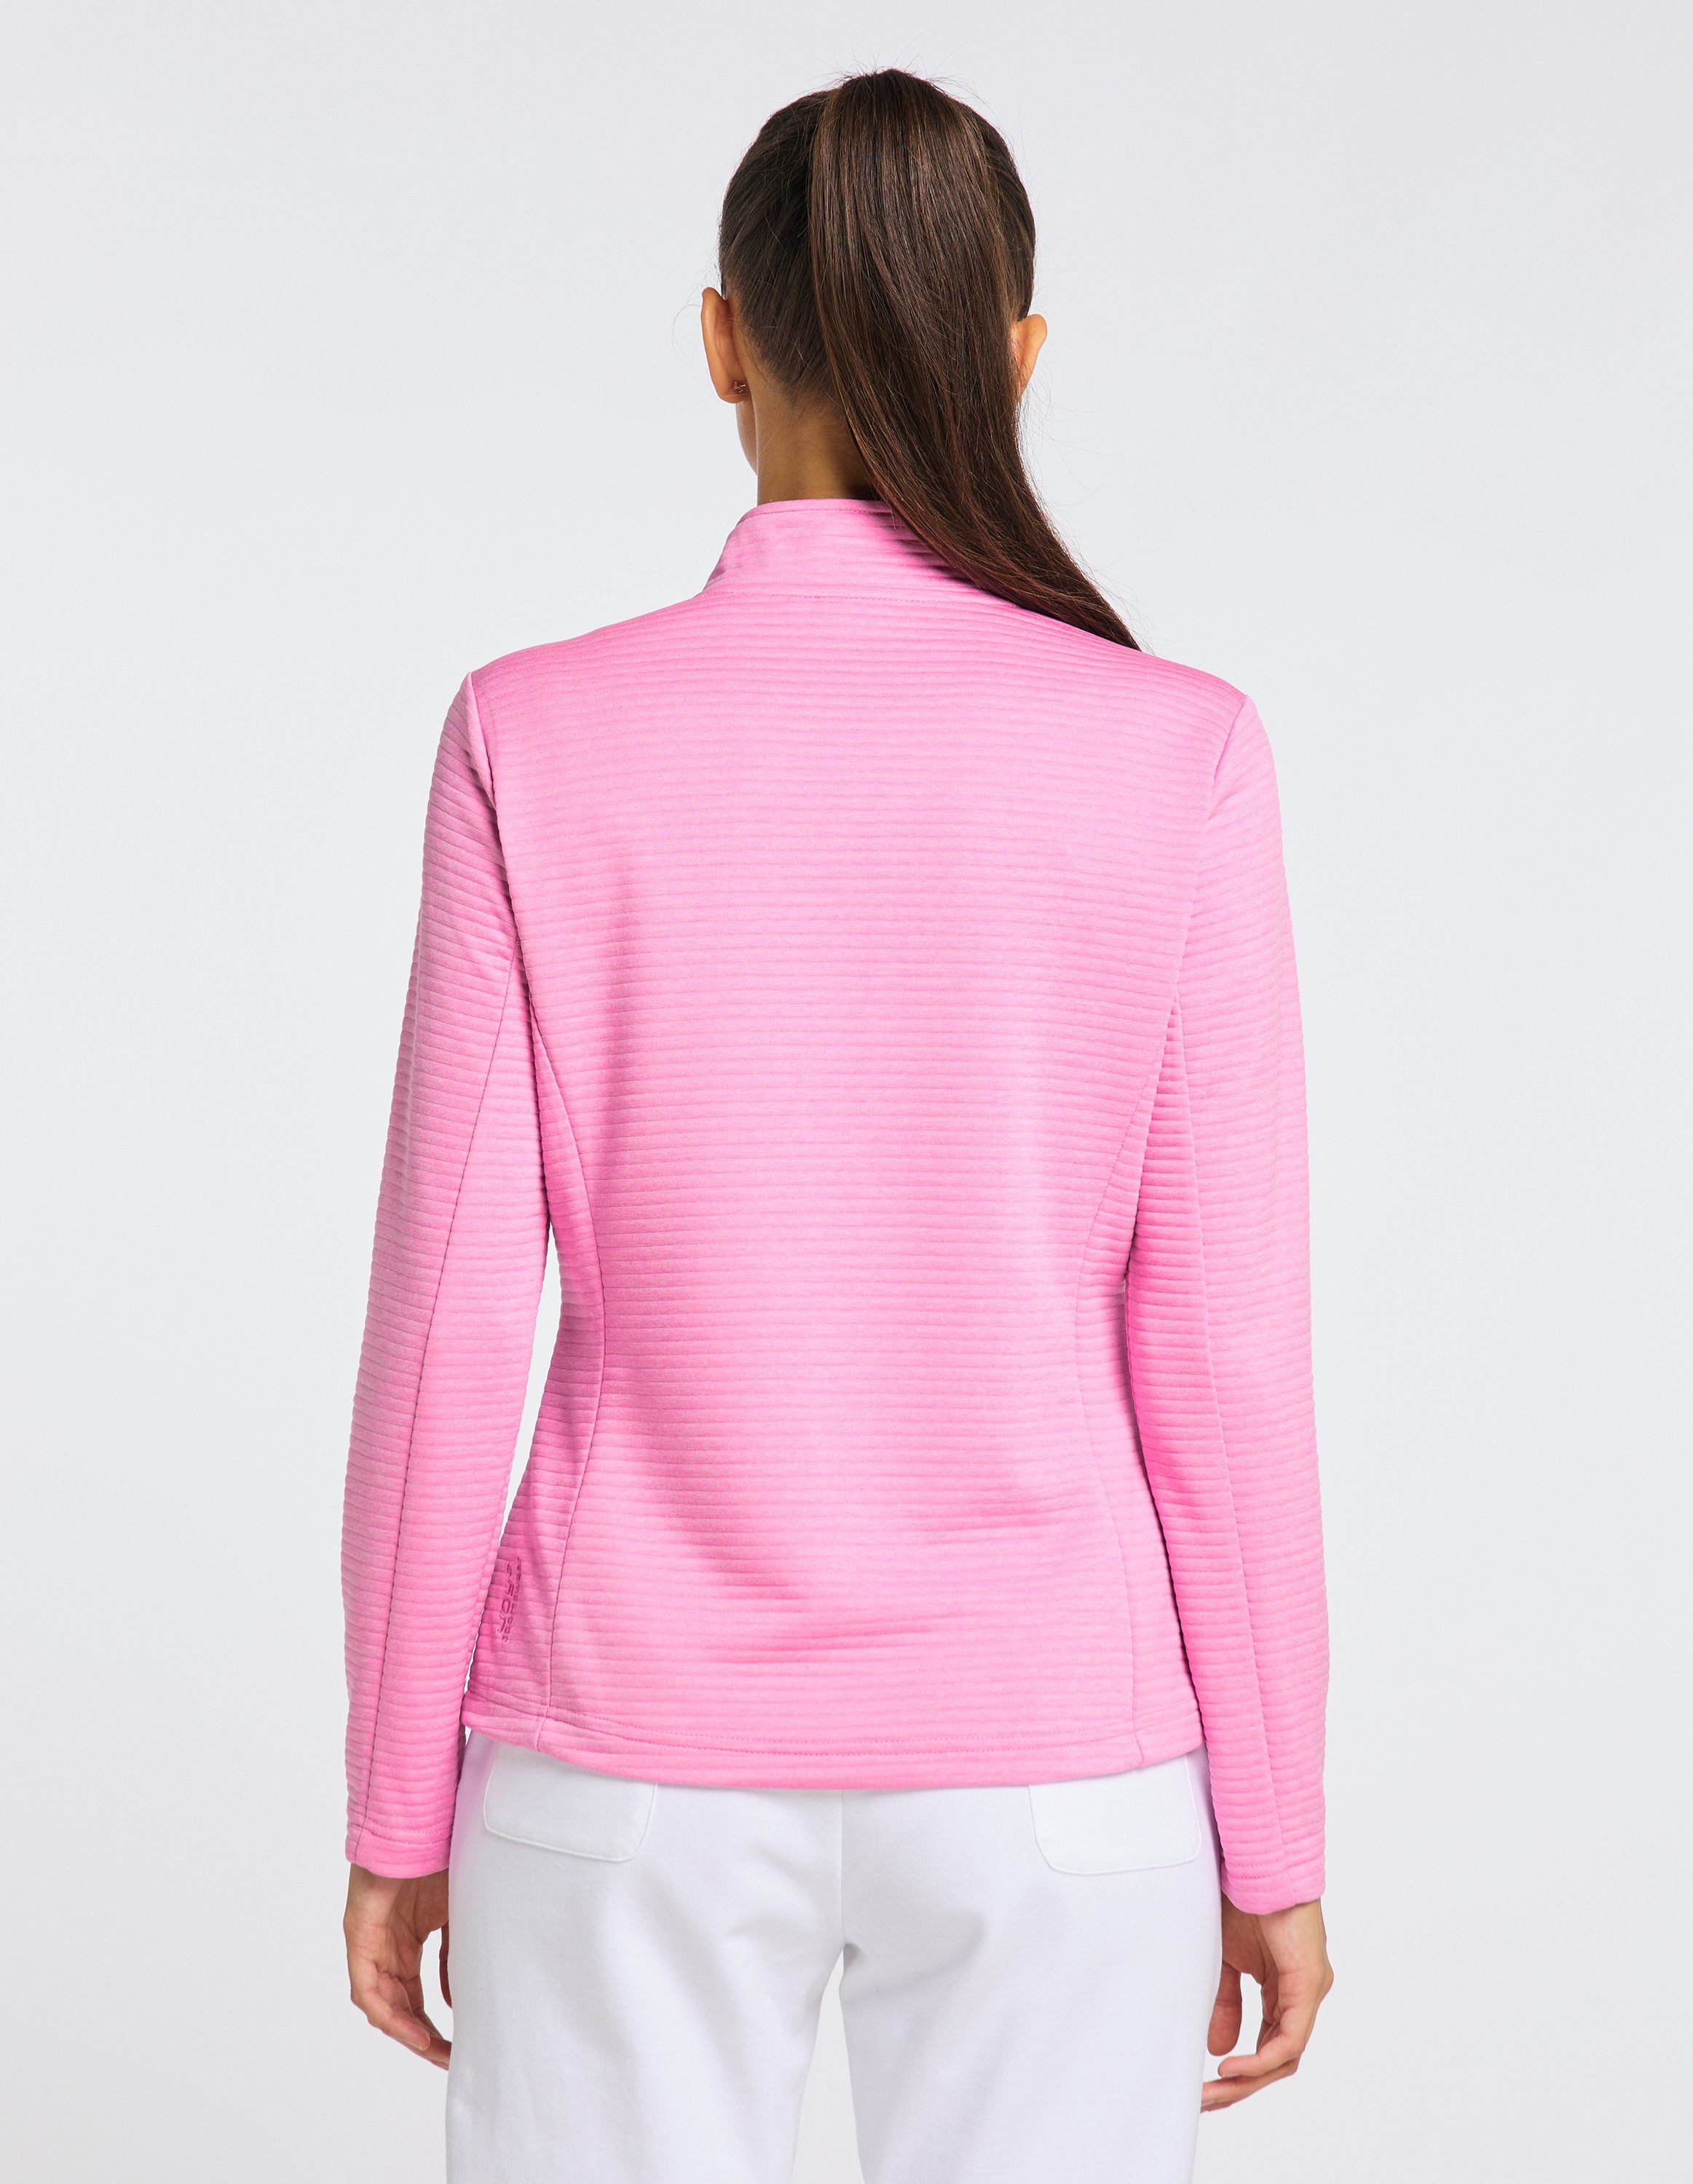 Joy Sportswear Trainingsjacke pink melange PEGGY Jacke cyclam